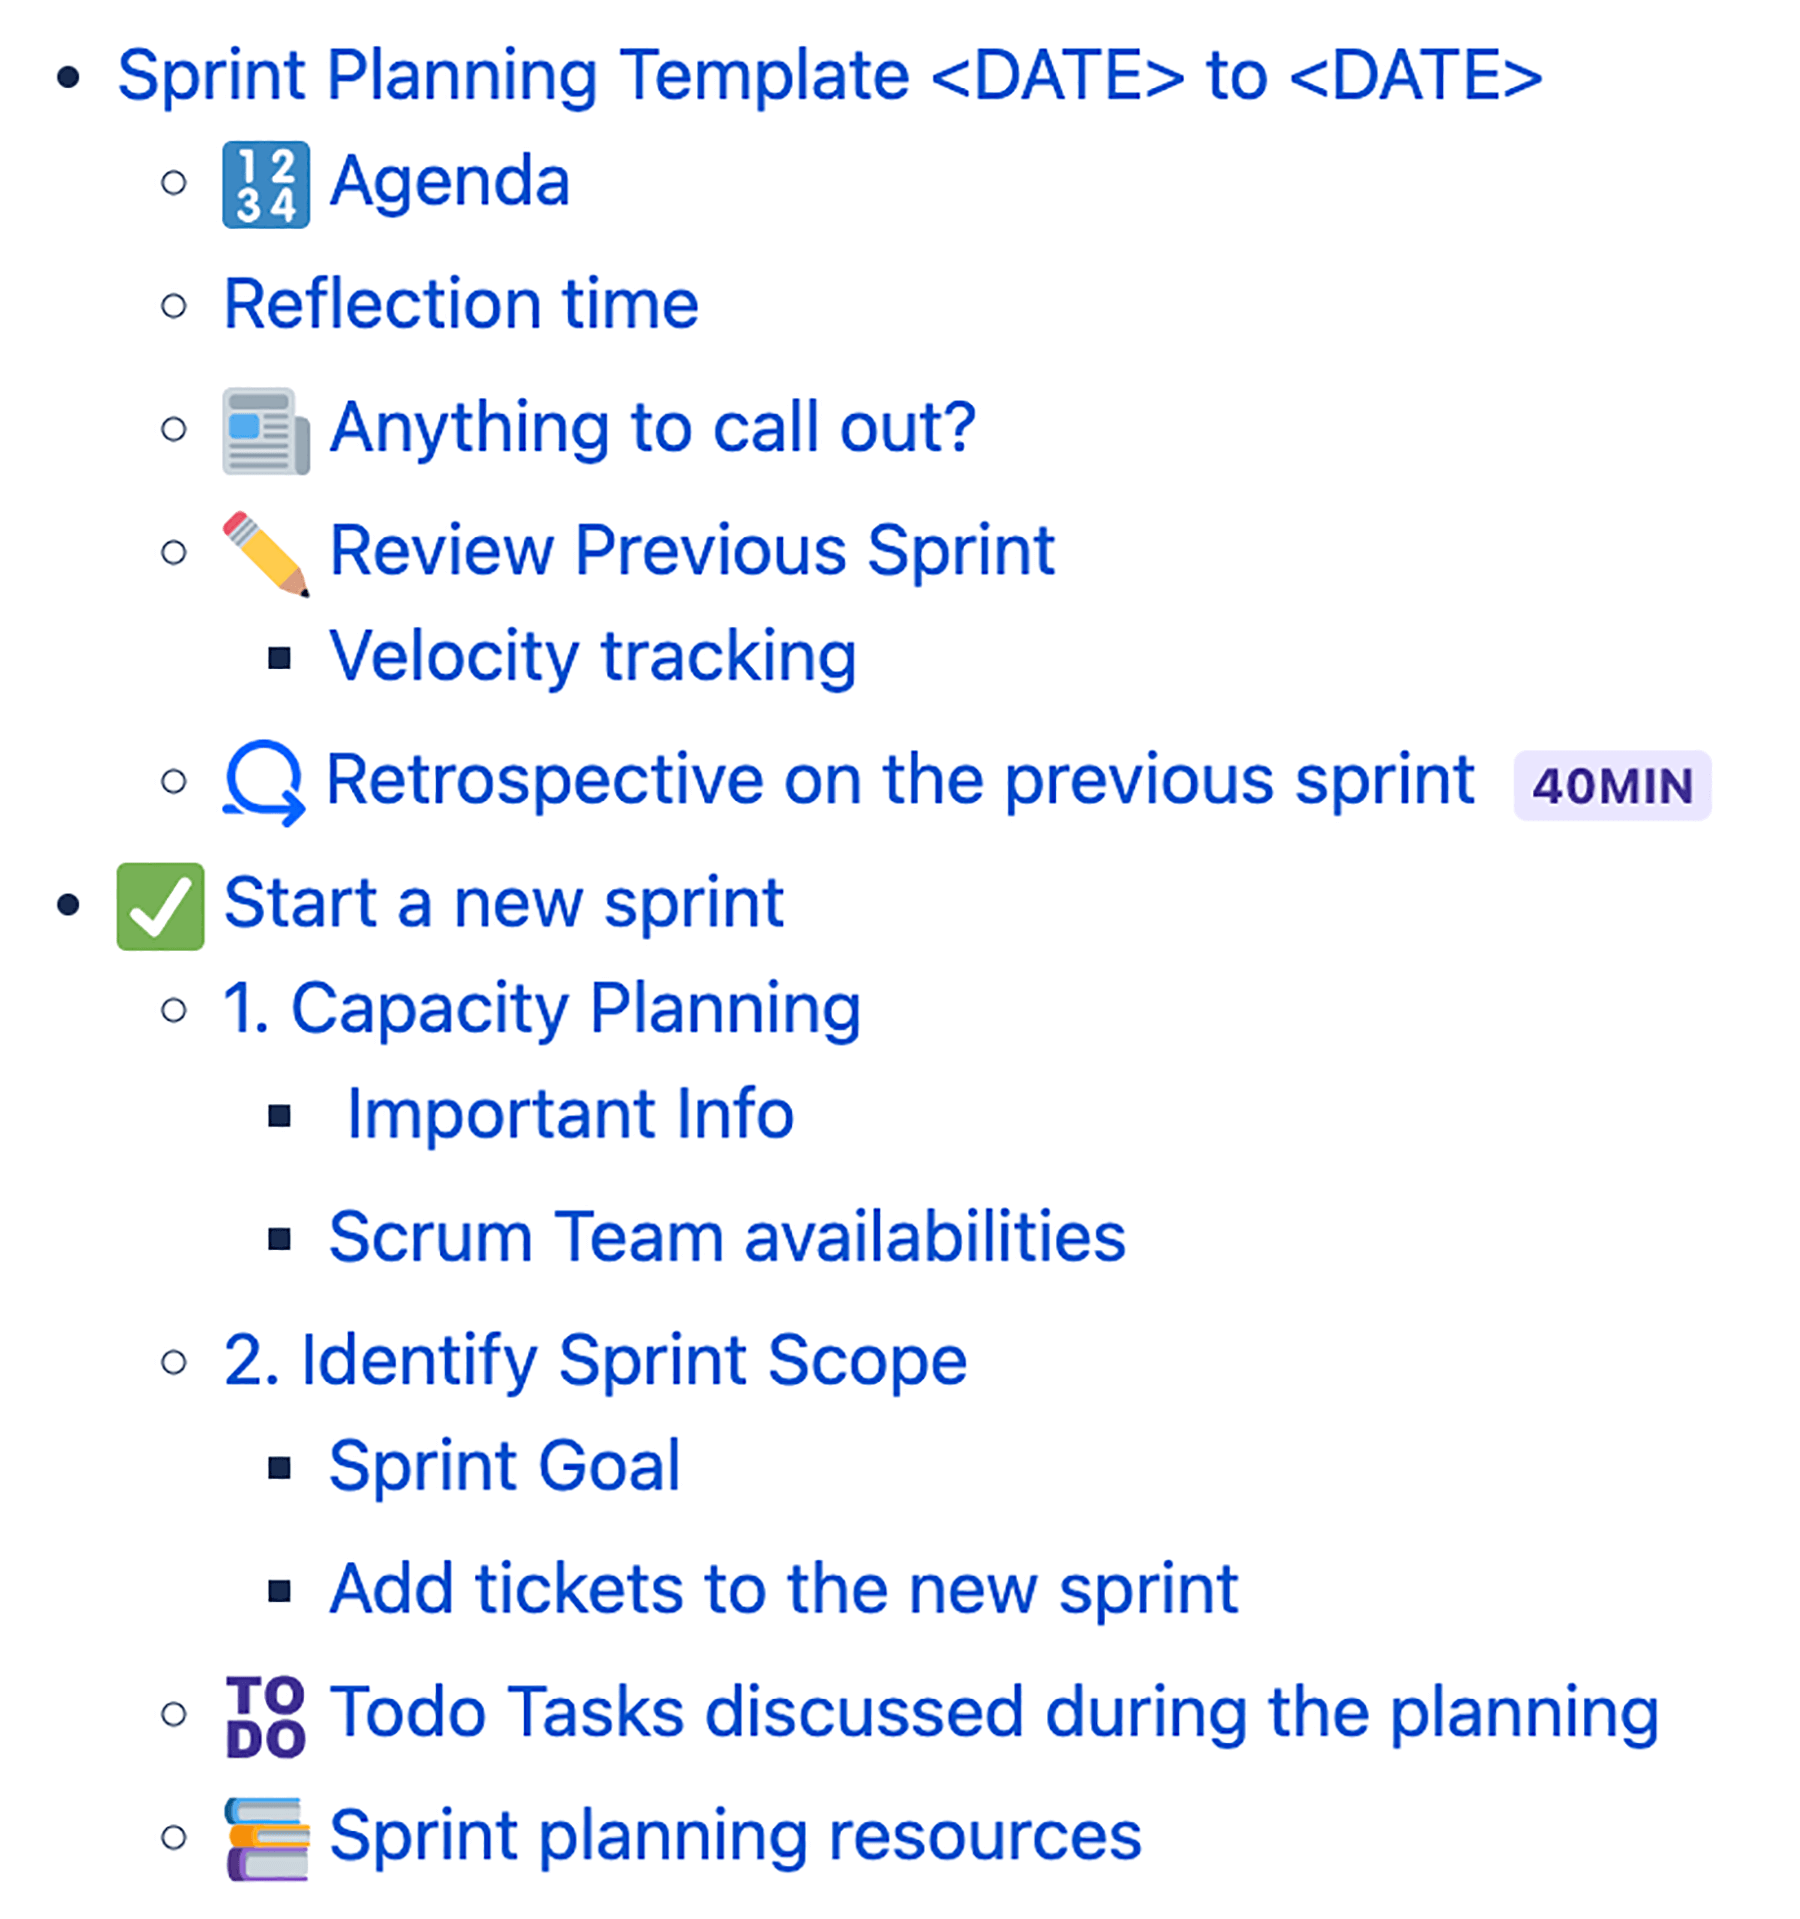 Bild: Sprint-Planungsvorlage